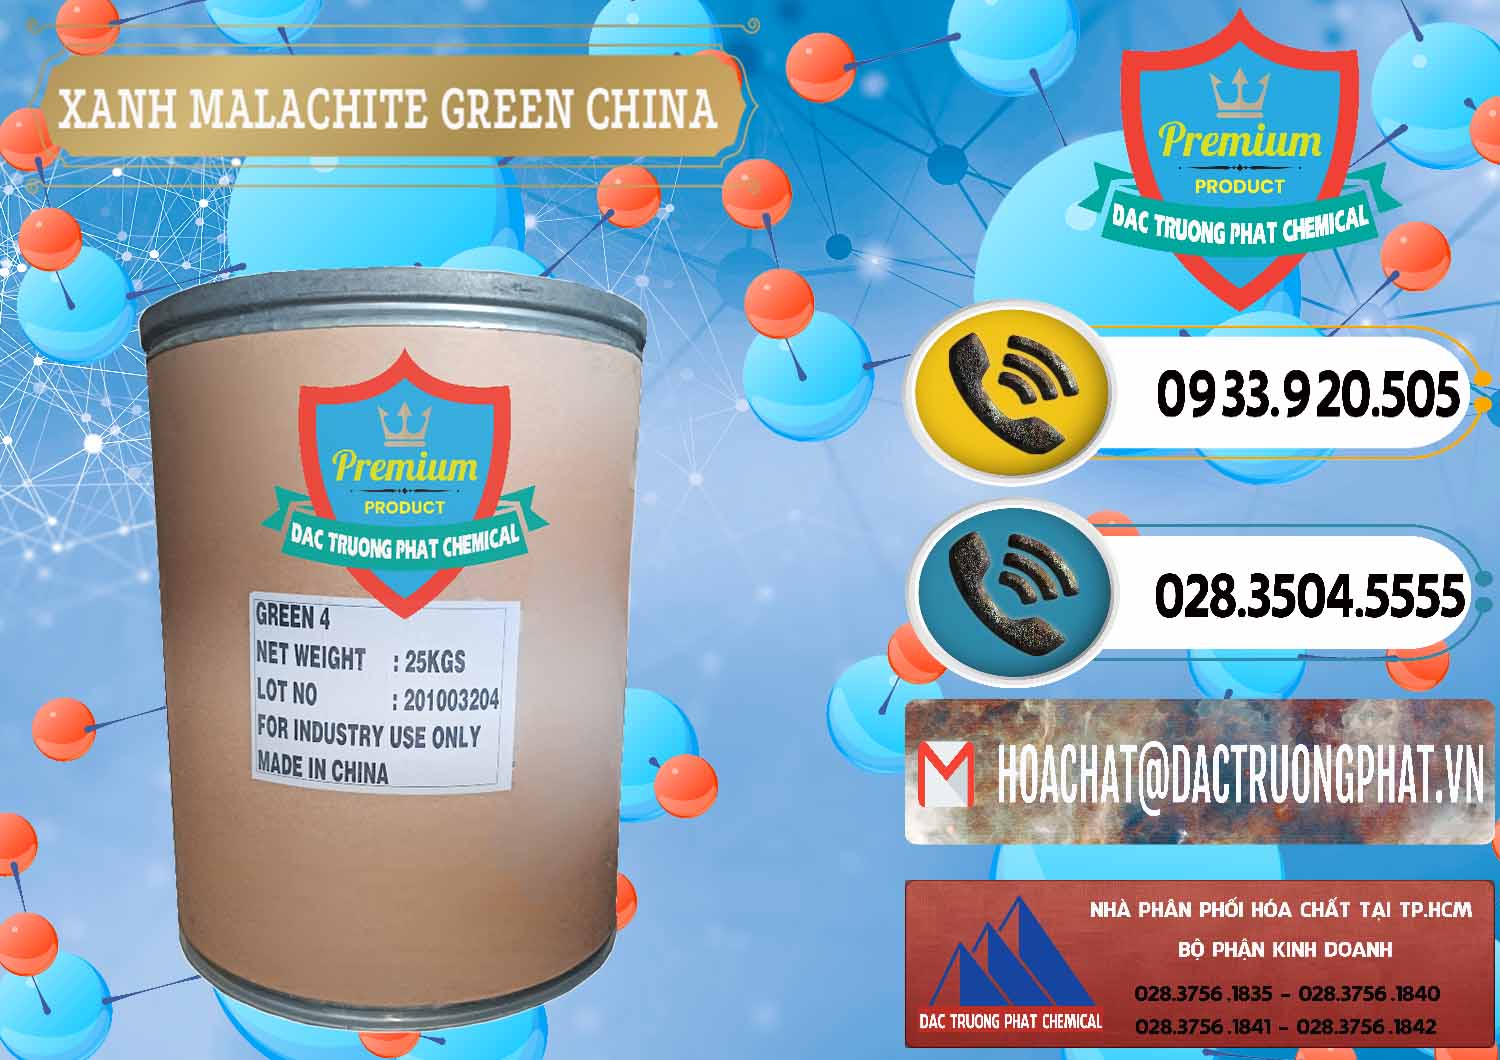 Cty phân phối - bán Xanh Malachite Green Trung Quốc China - 0325 - Đơn vị phân phối - cung cấp hóa chất tại TP.HCM - hoachatdetnhuom.vn